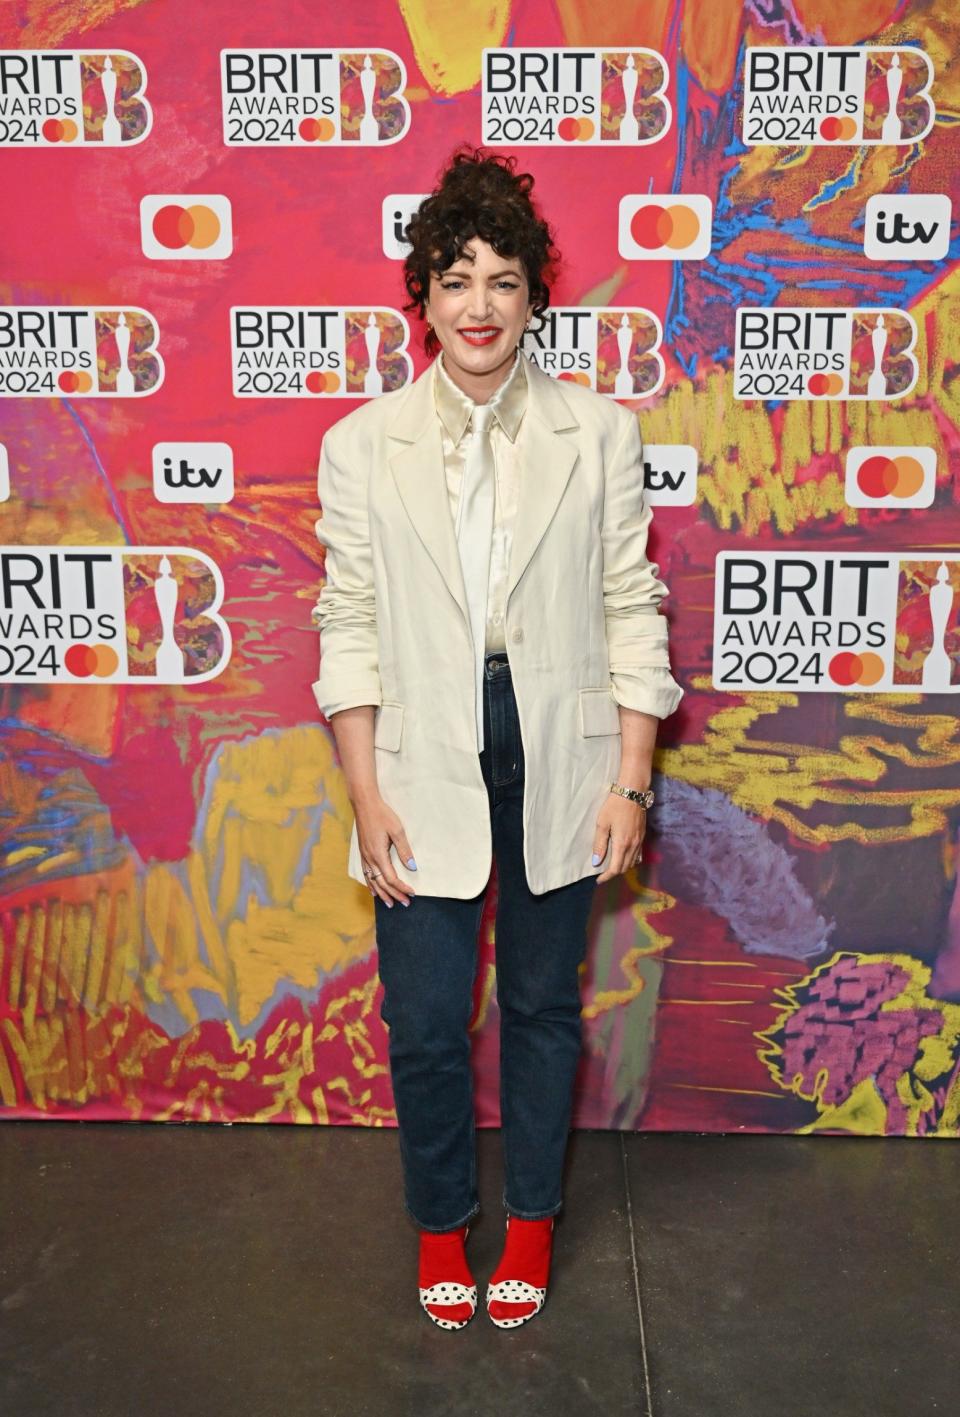 Annie Mac at the 2024 Brit Awards